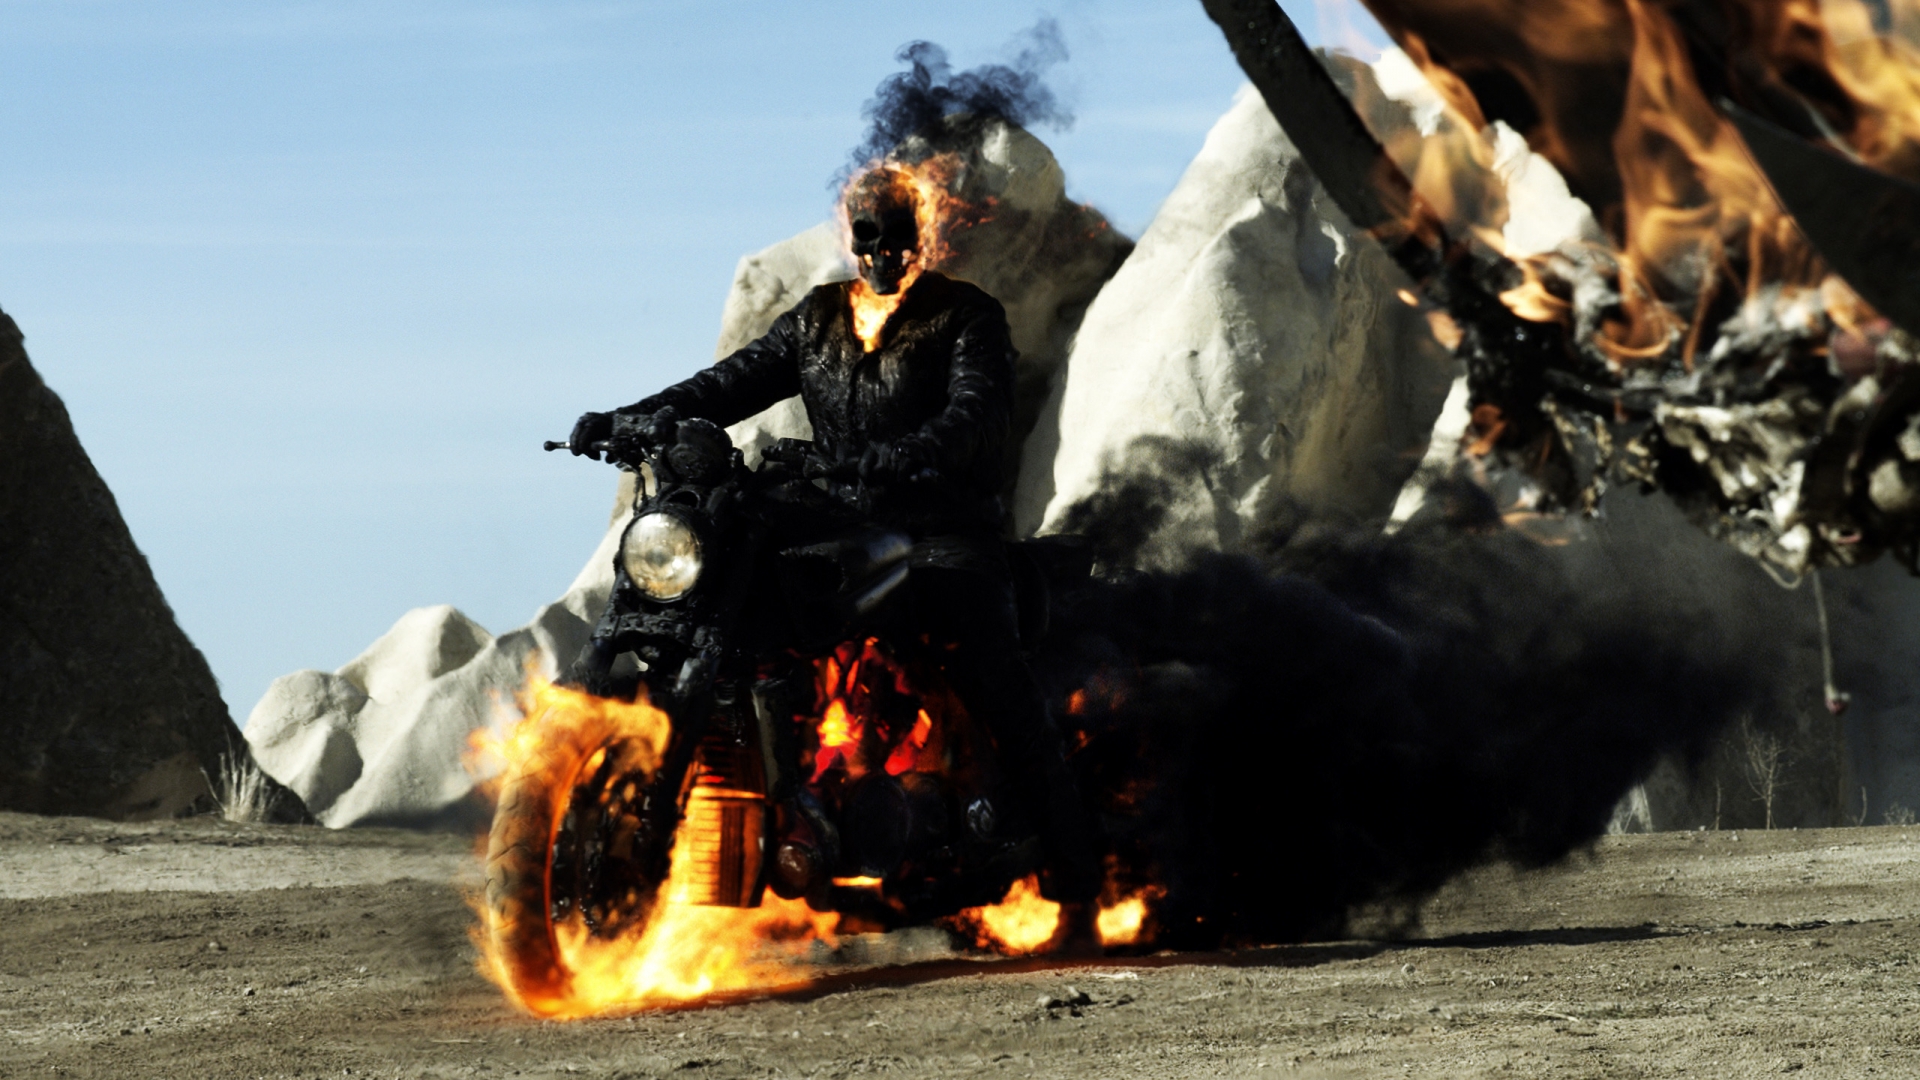 Ghost Rider Spirit of Vengeance 2012 for 1920 x 1080 HDTV 1080p resolution